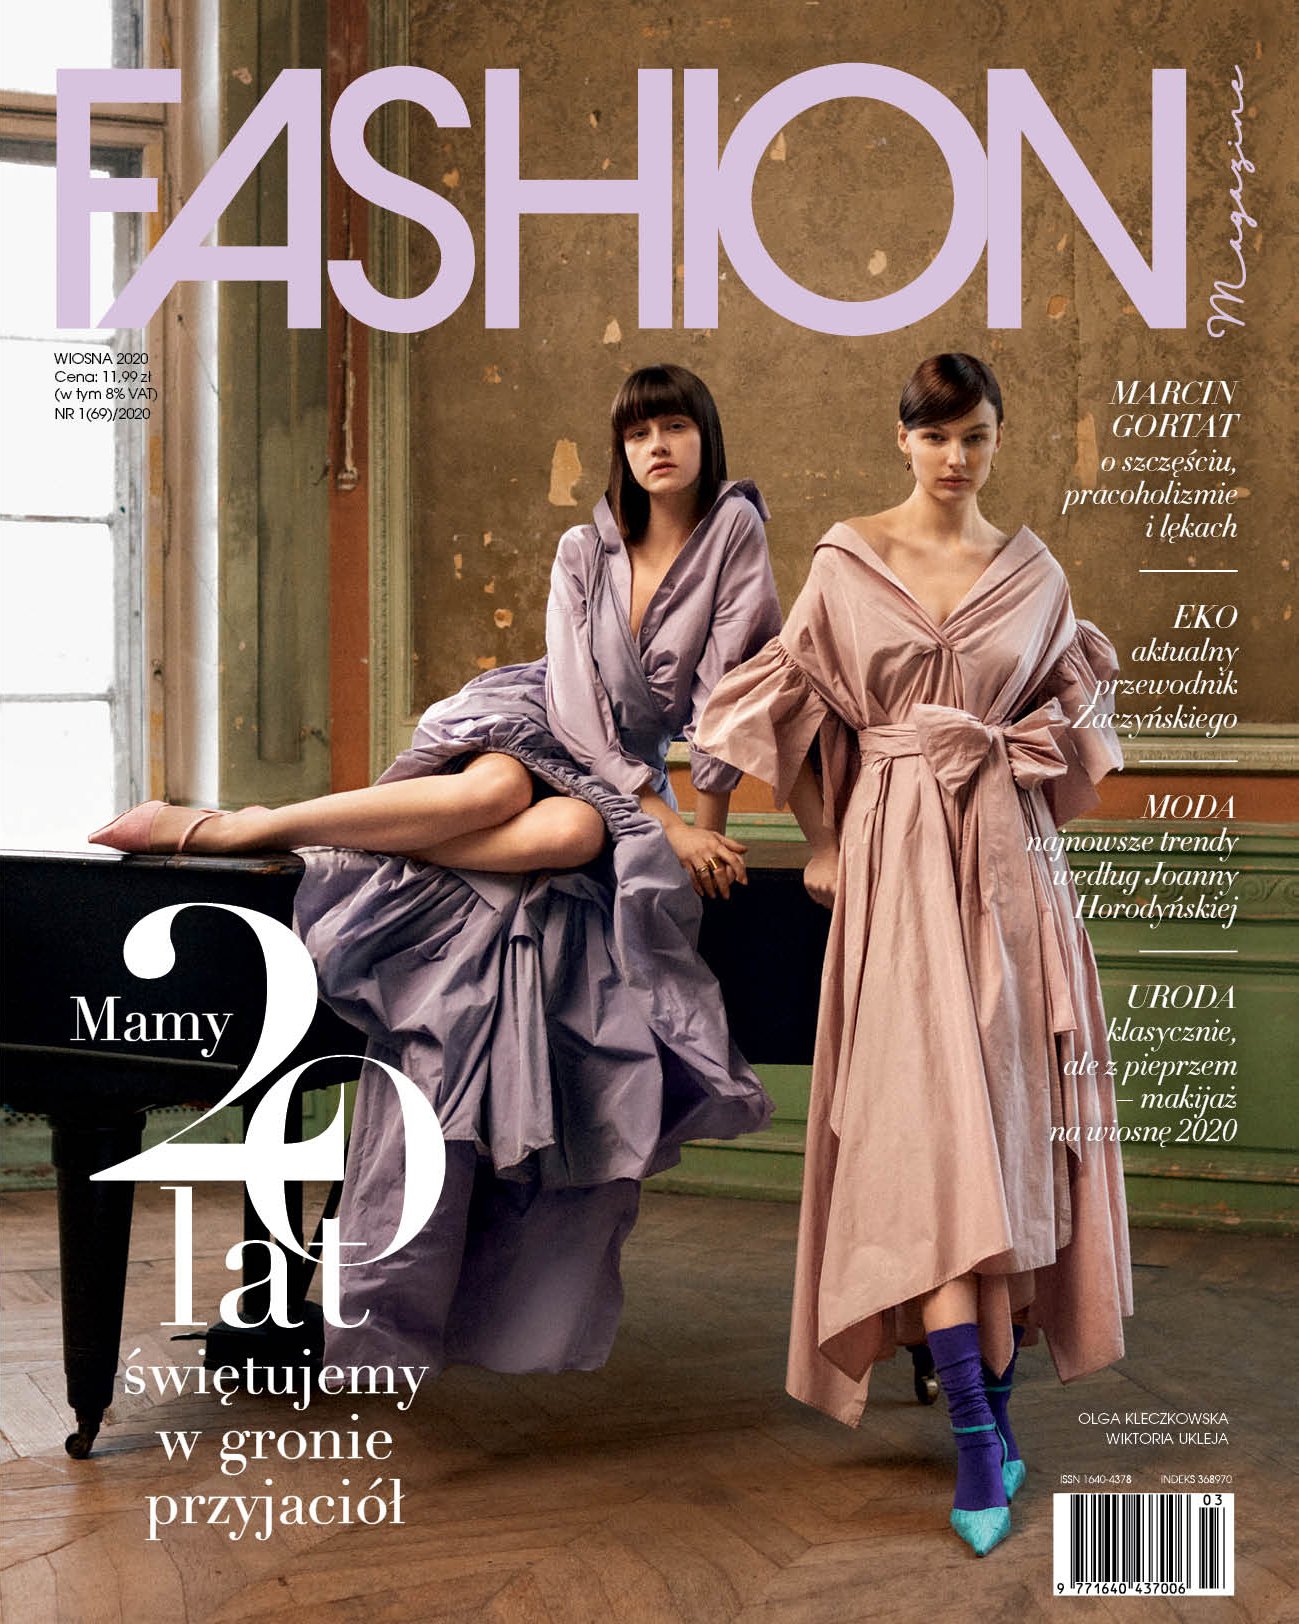 Prezentujemy nowe wydanie Fashion Magazine (wiosna 2020)